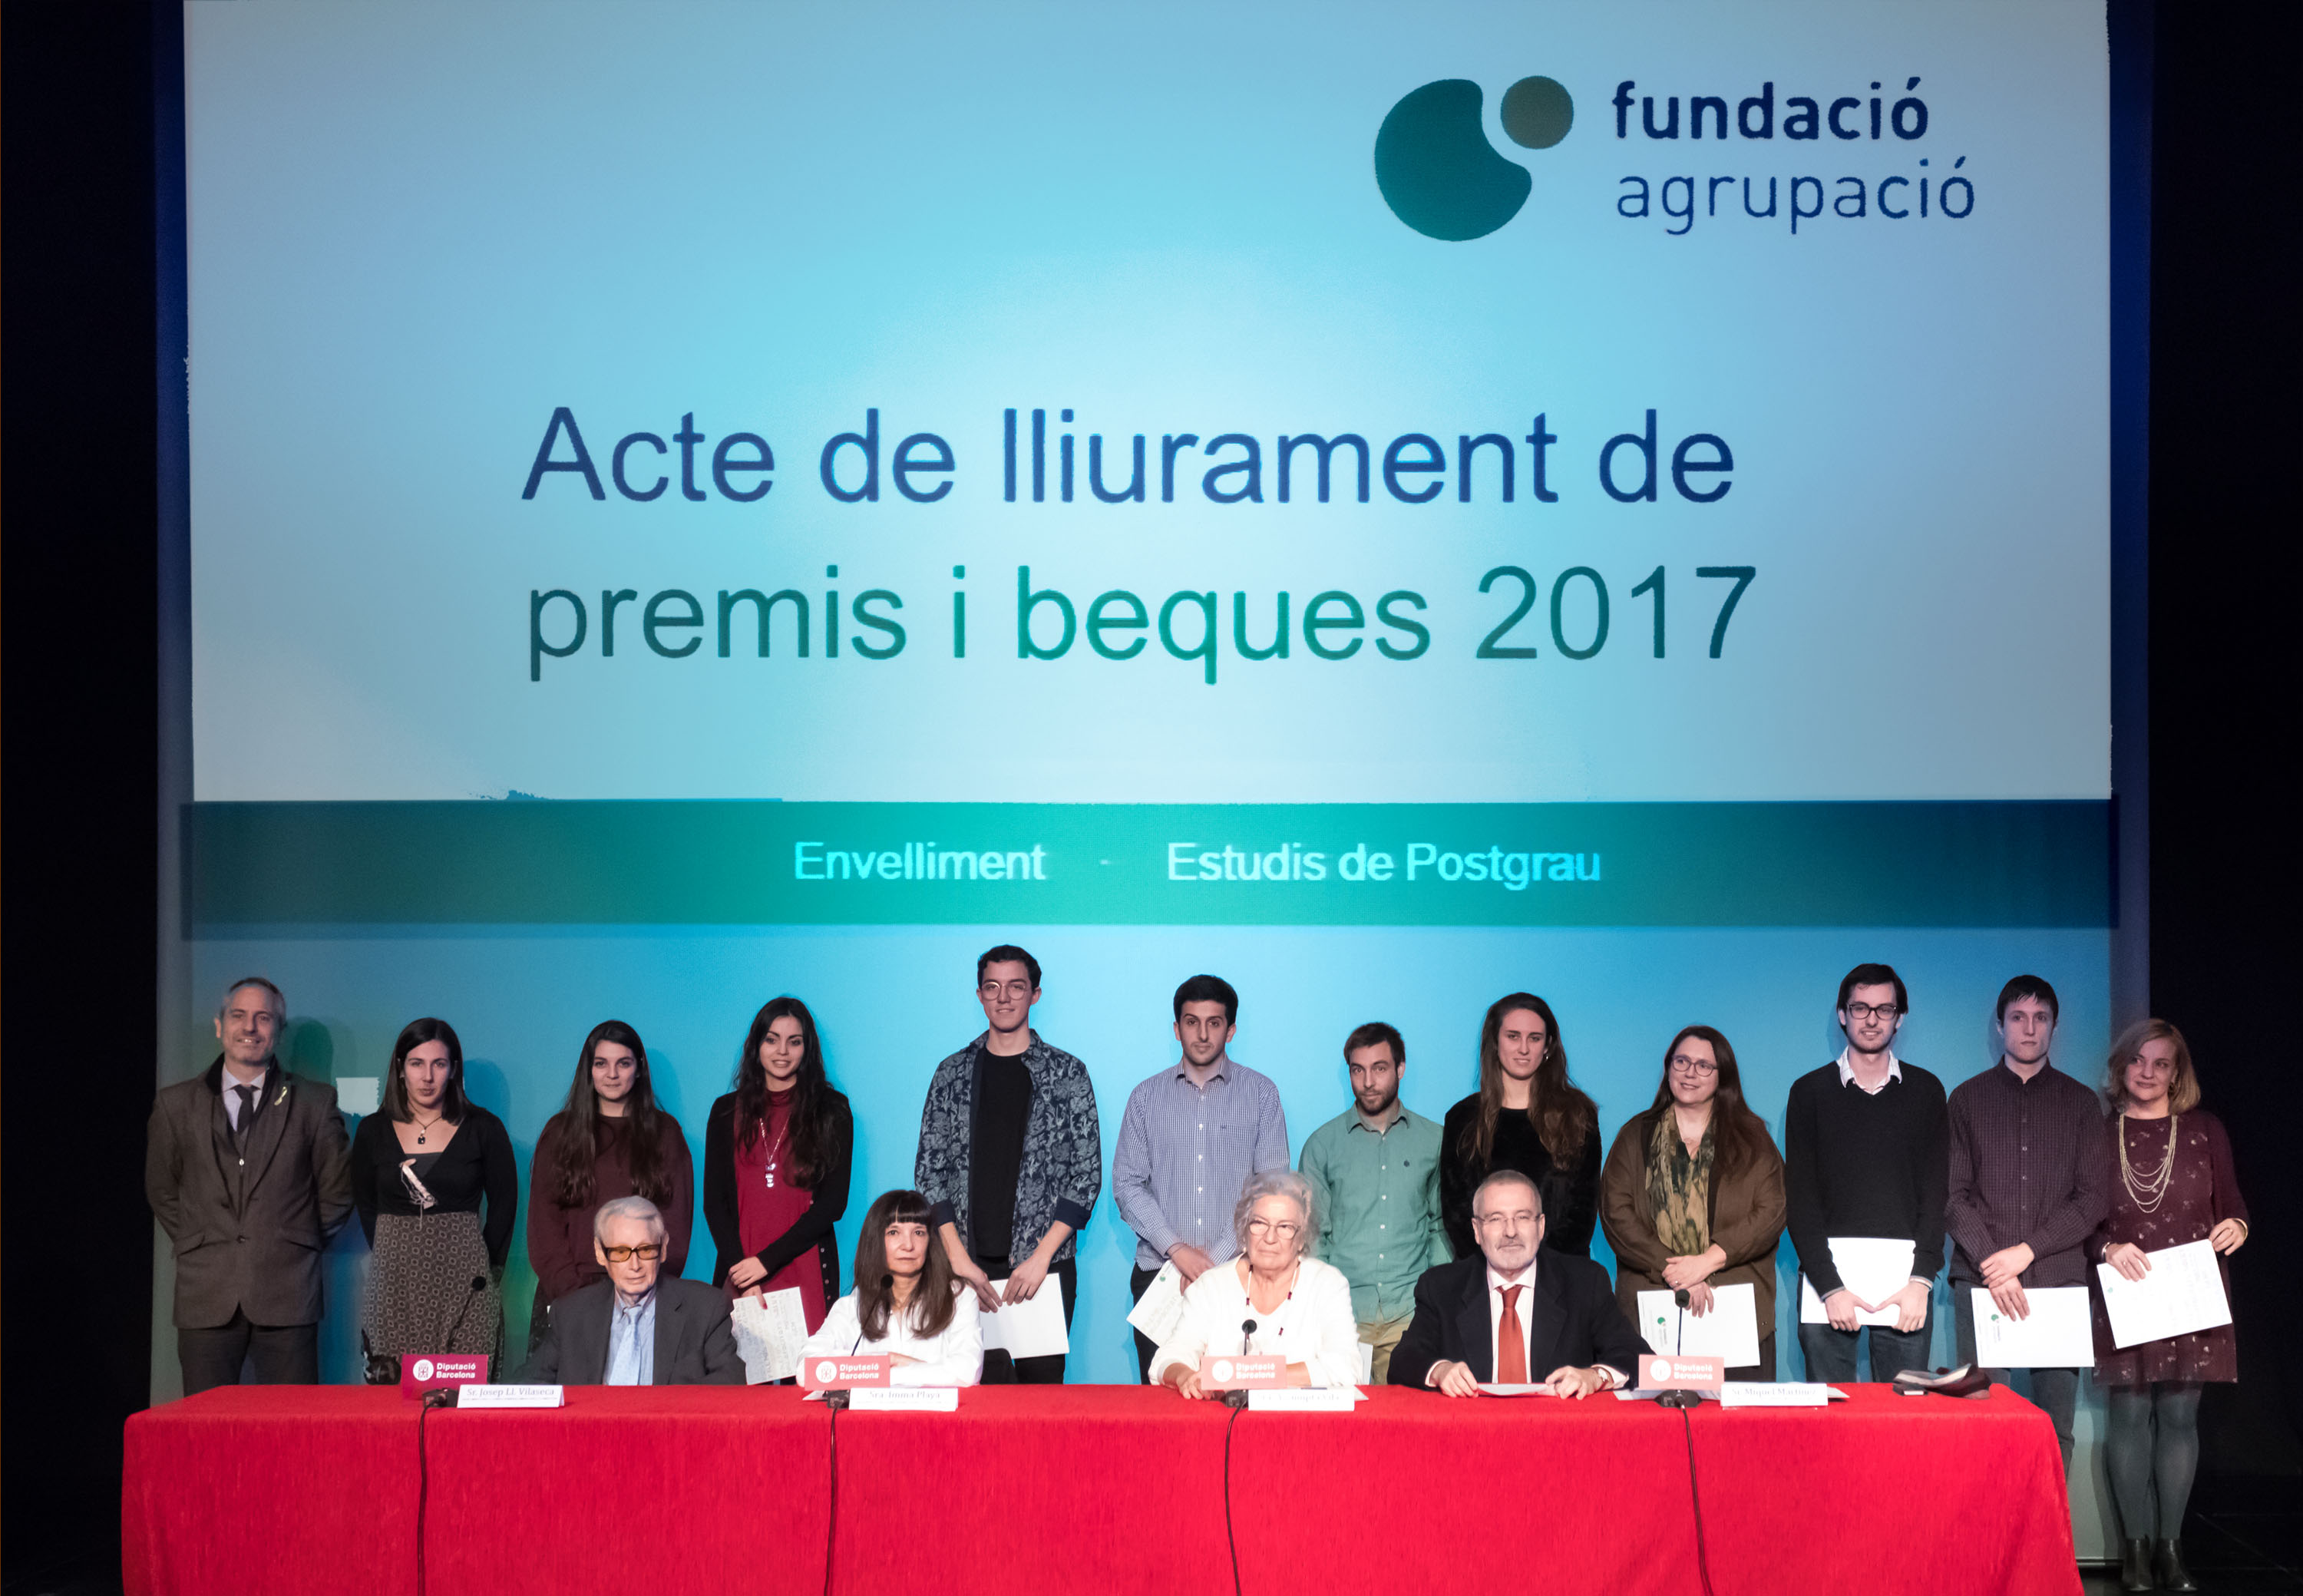 Fundació Agrupació 2017 Award